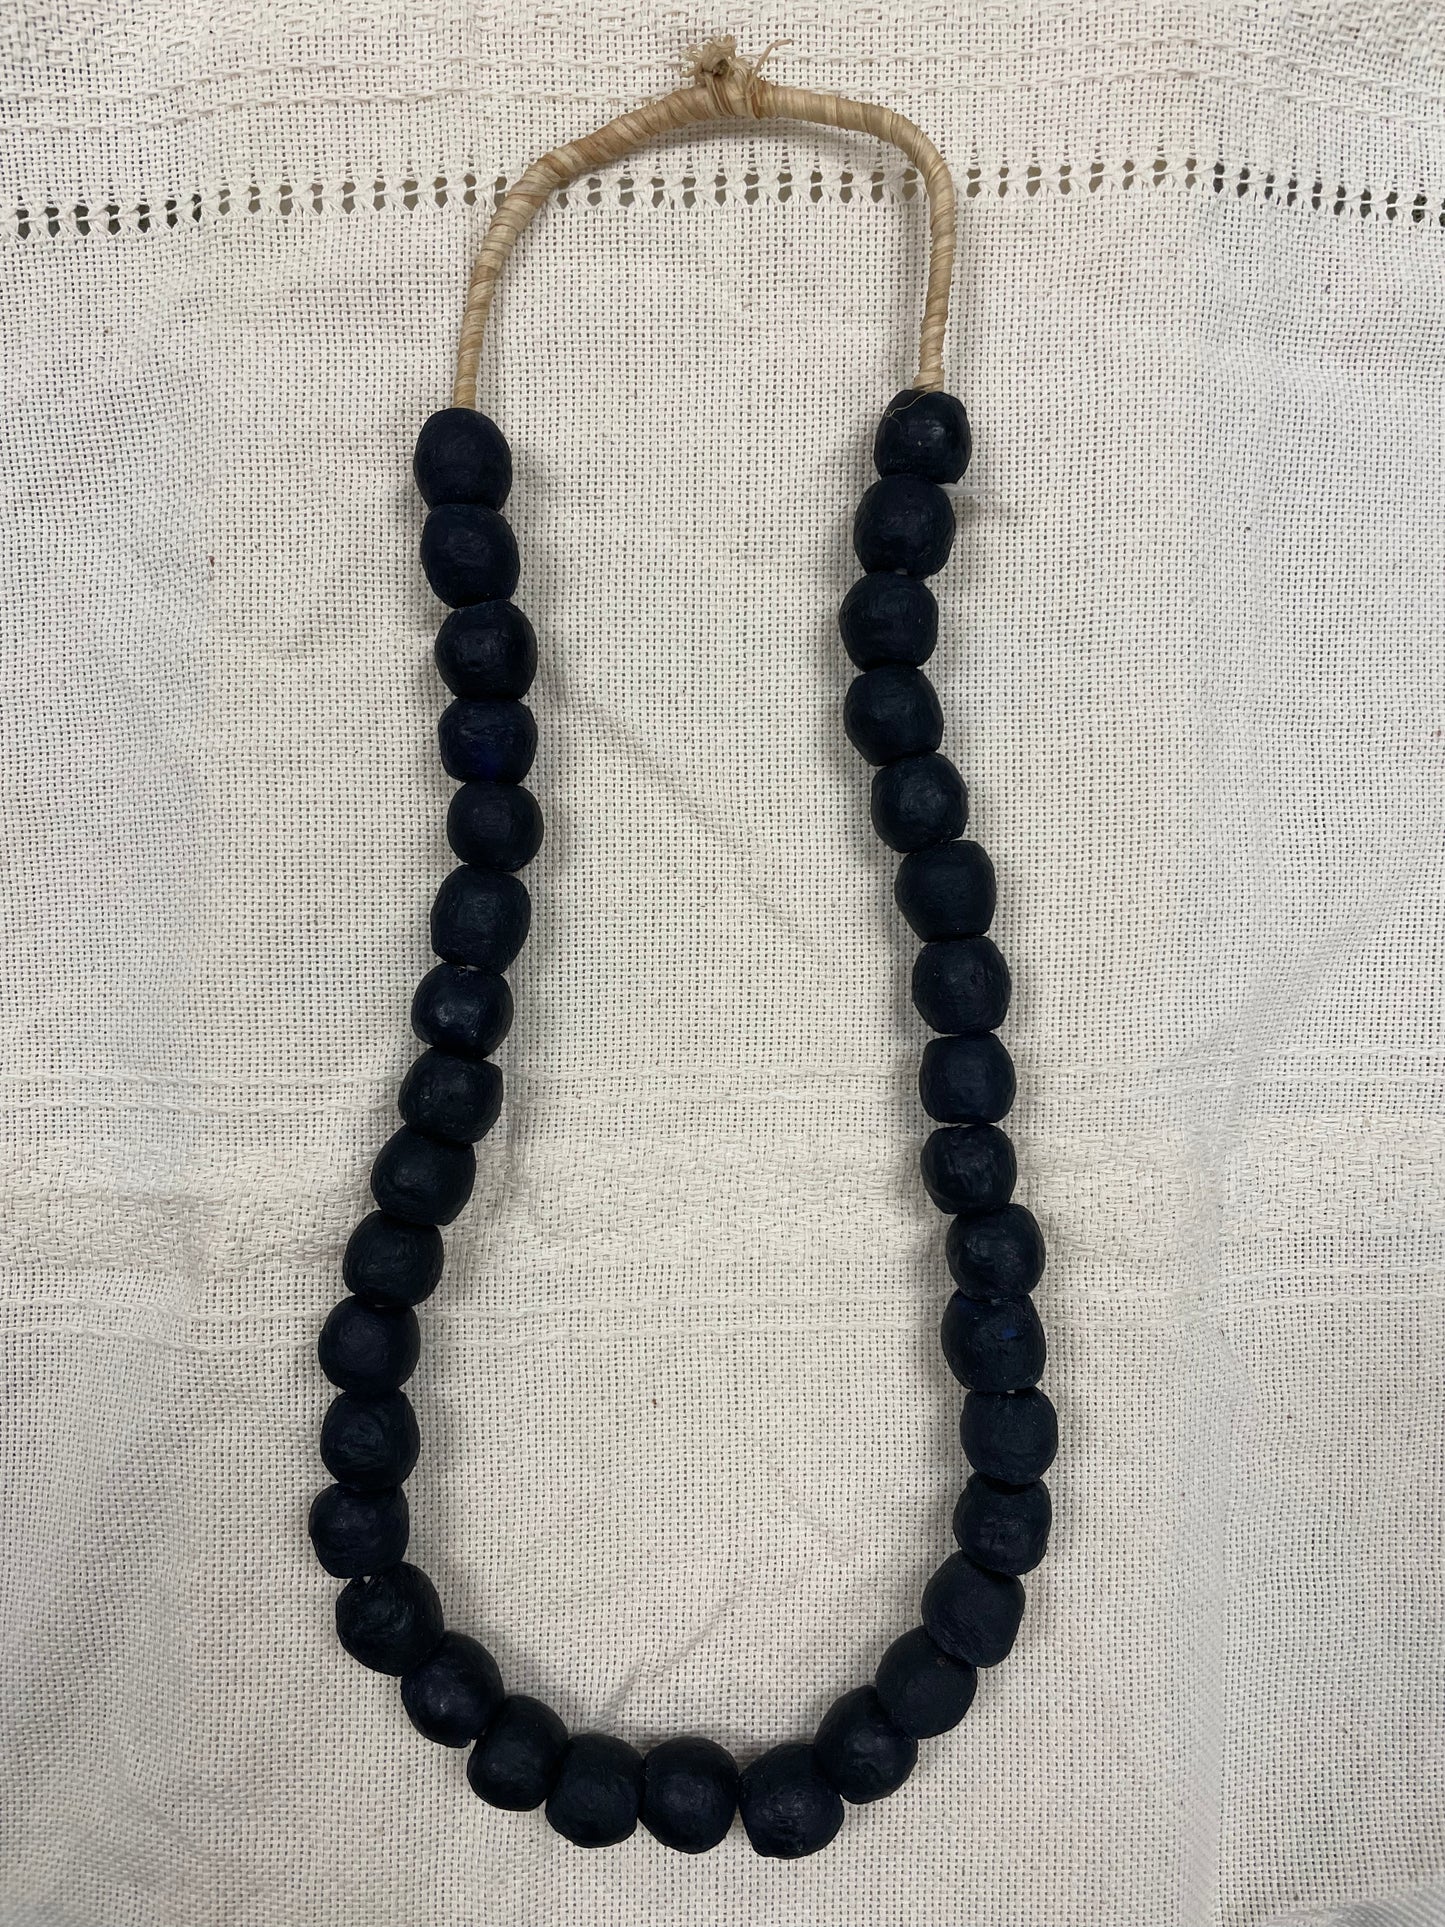 Medium Glass Beads from Ghana in Black